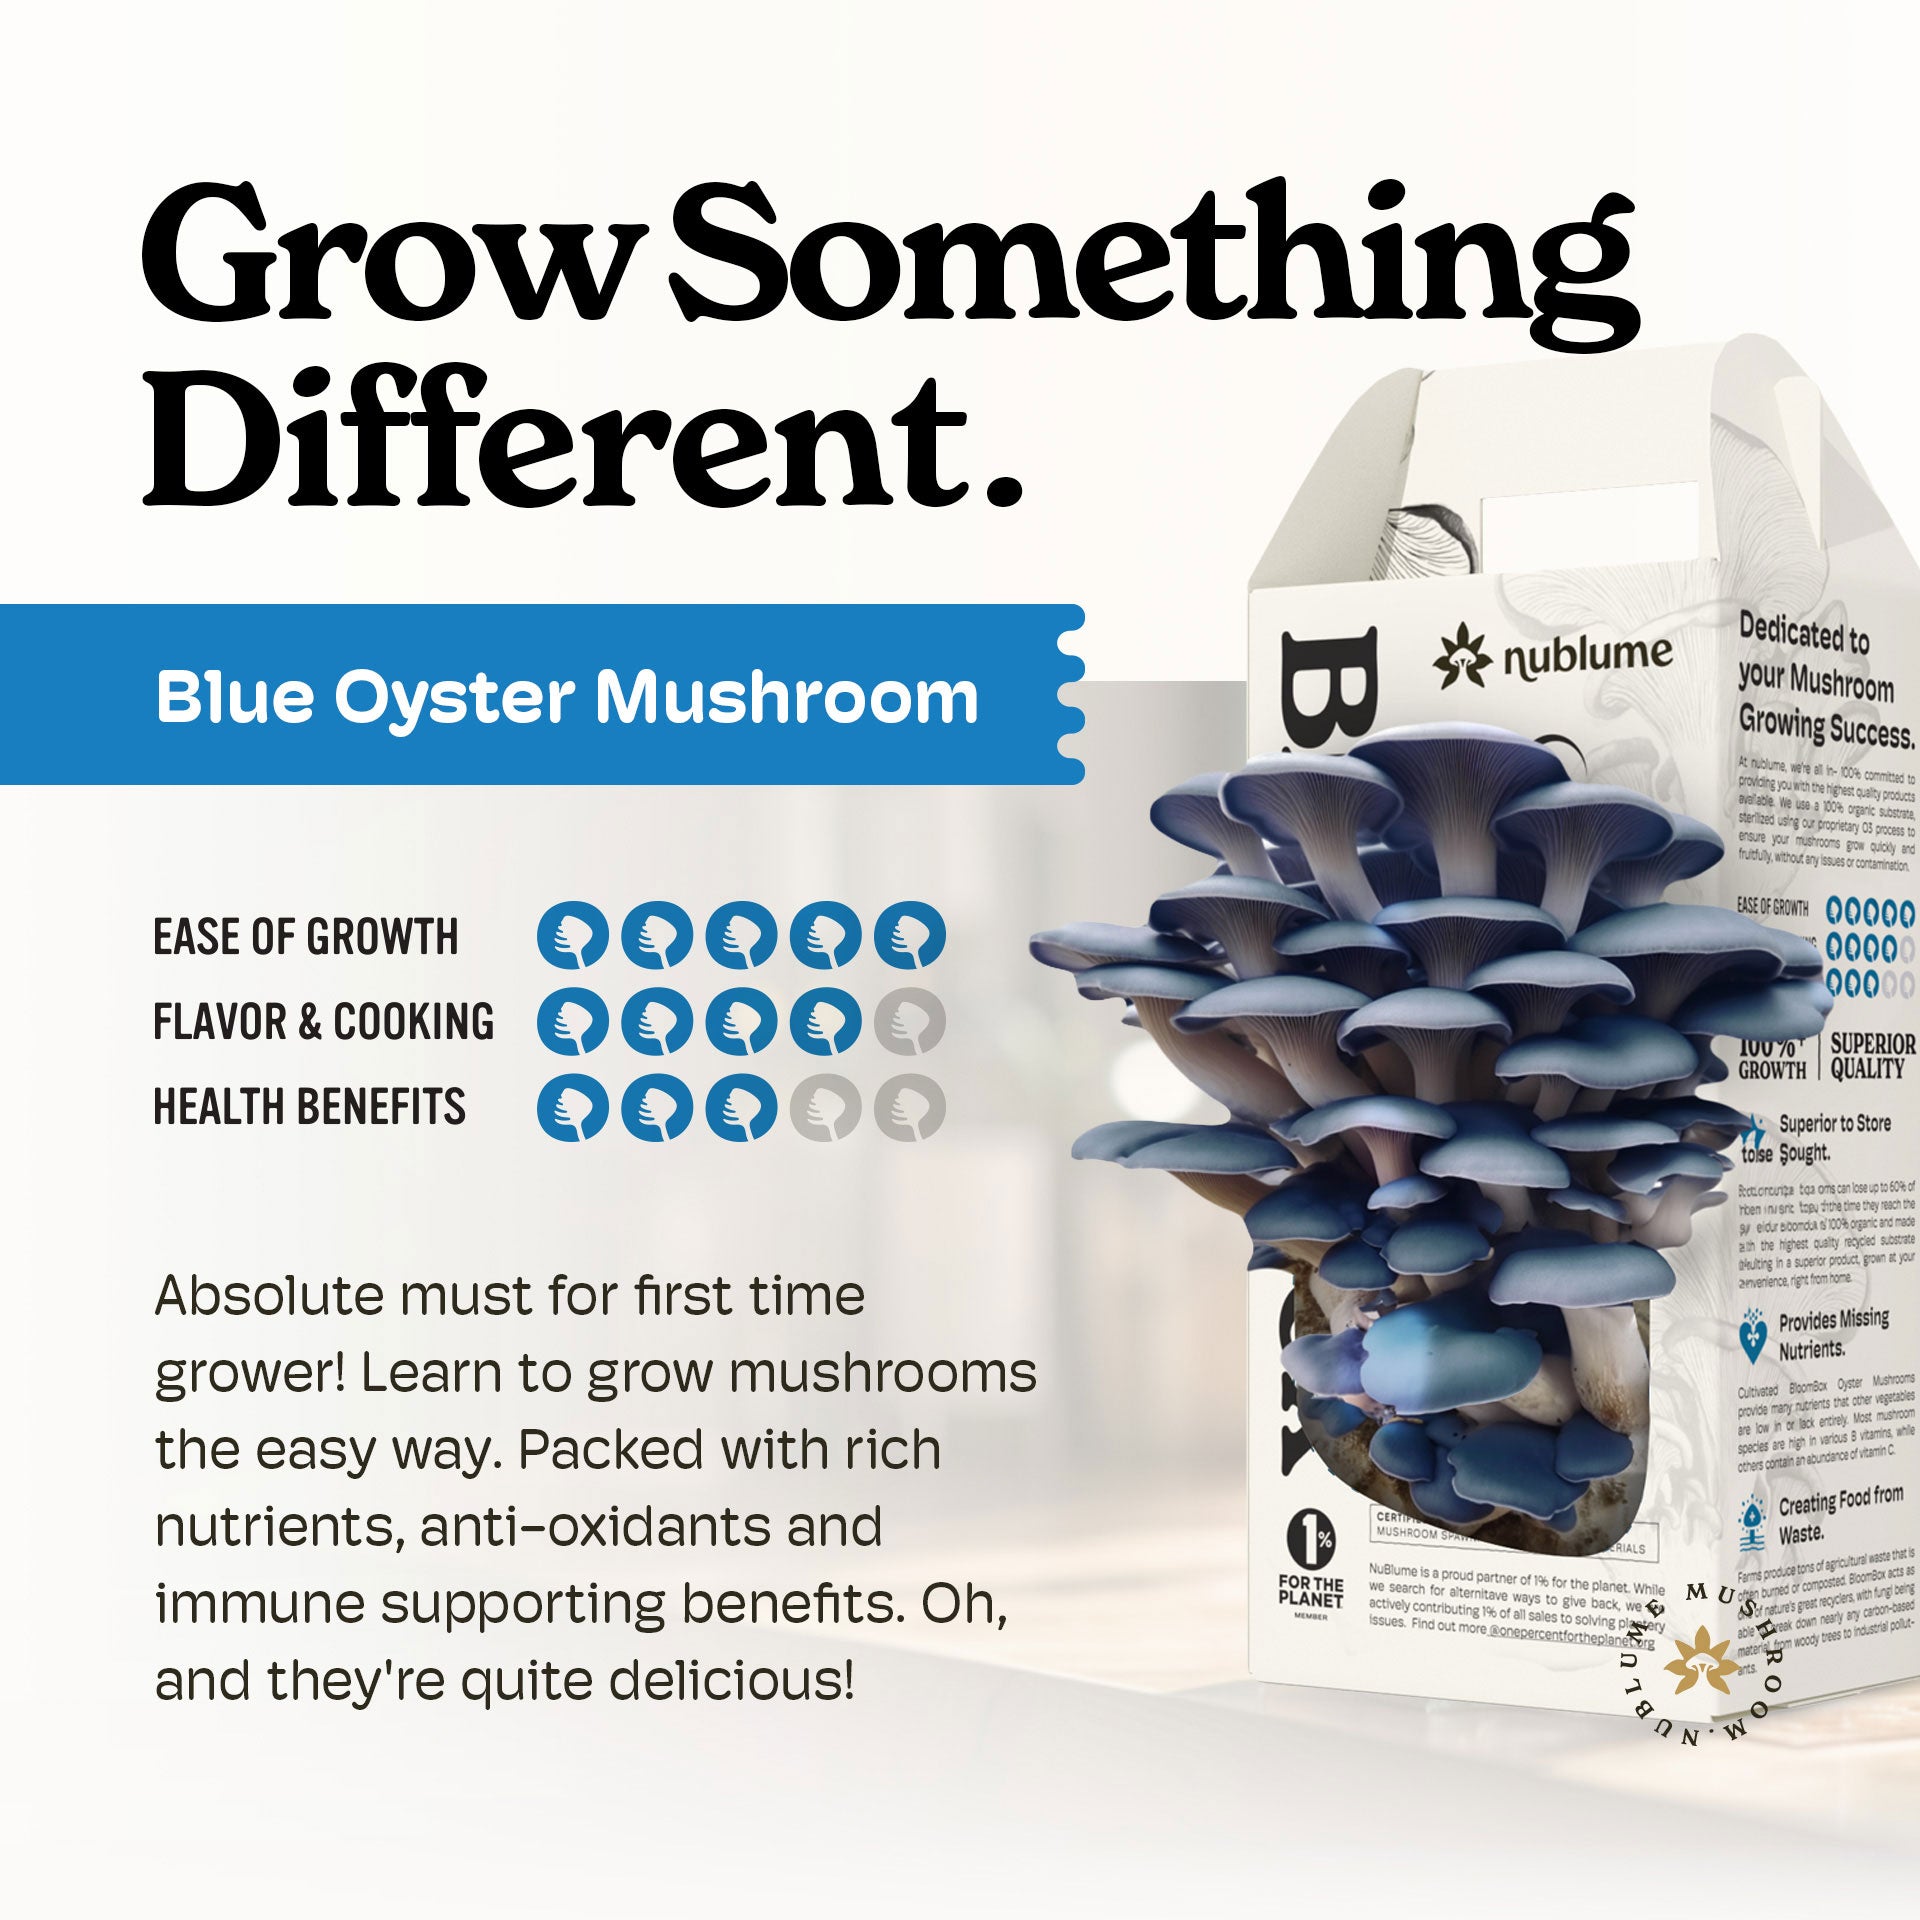 Mushroom Lunch Box — NATURE WALK